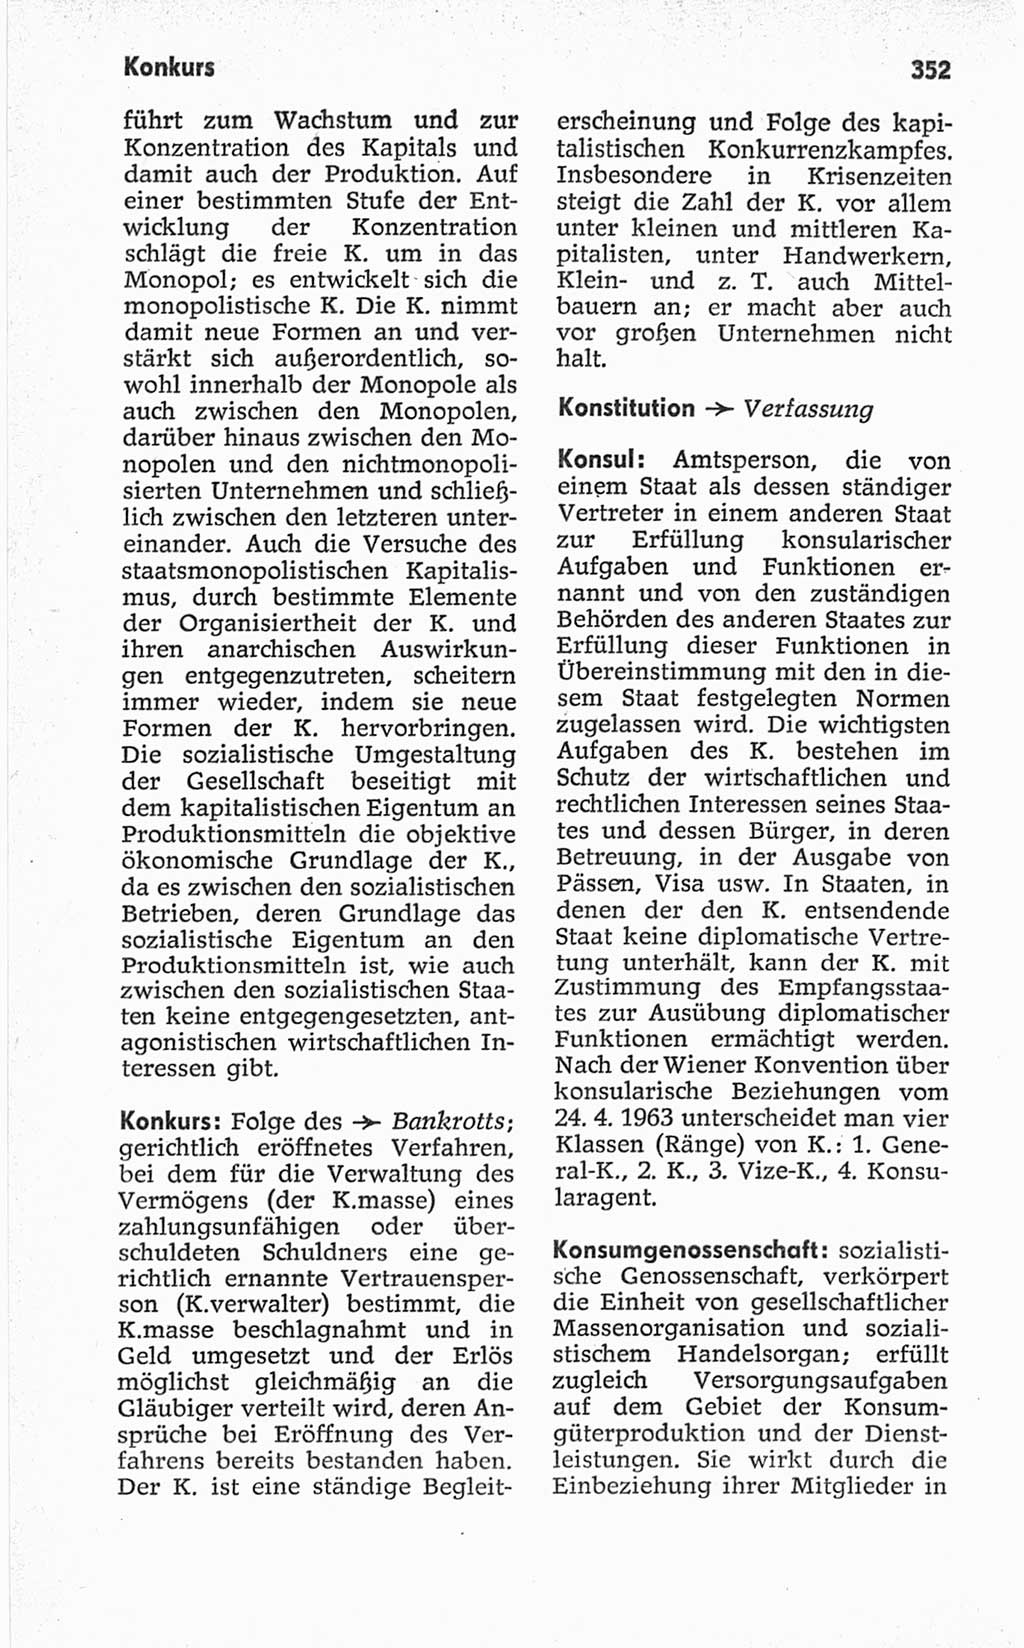 Kleines politisches Wörterbuch [Deutsche Demokratische Republik (DDR)] 1967, Seite 352 (Kl. pol. Wb. DDR 1967, S. 352)